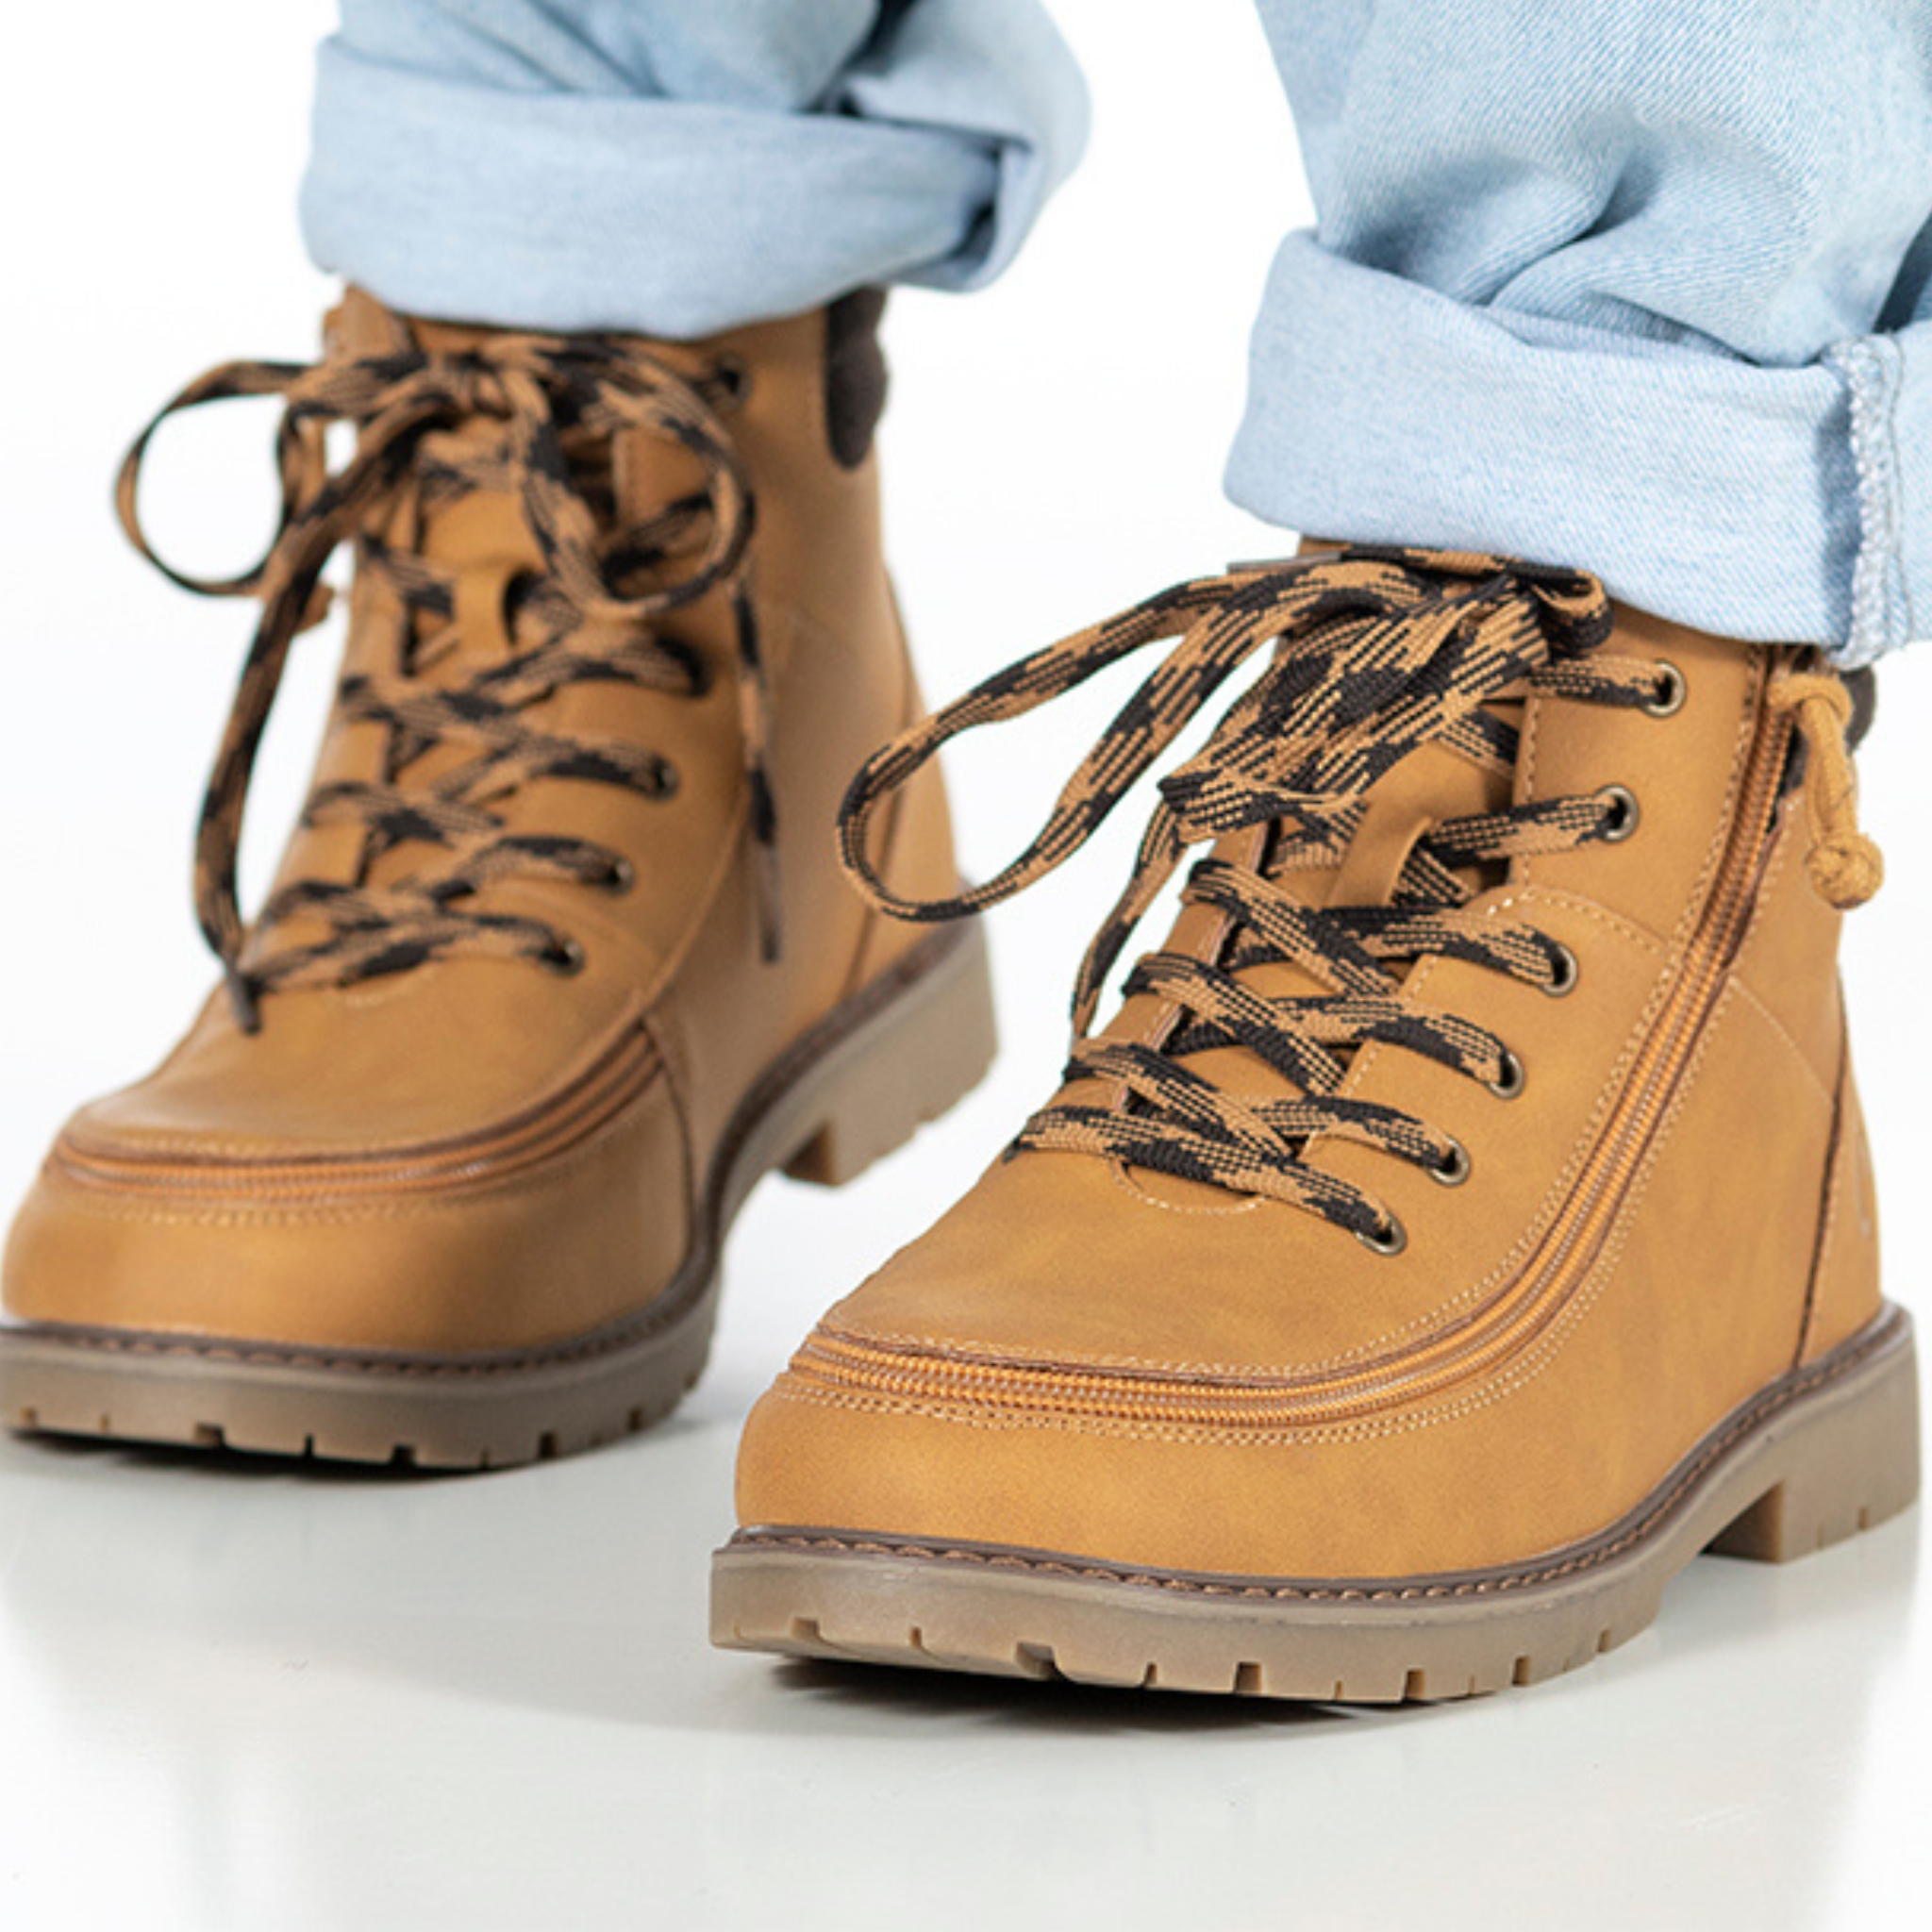 Billy Footwear (Kids) -  Tan Faux Leather Lug Boots